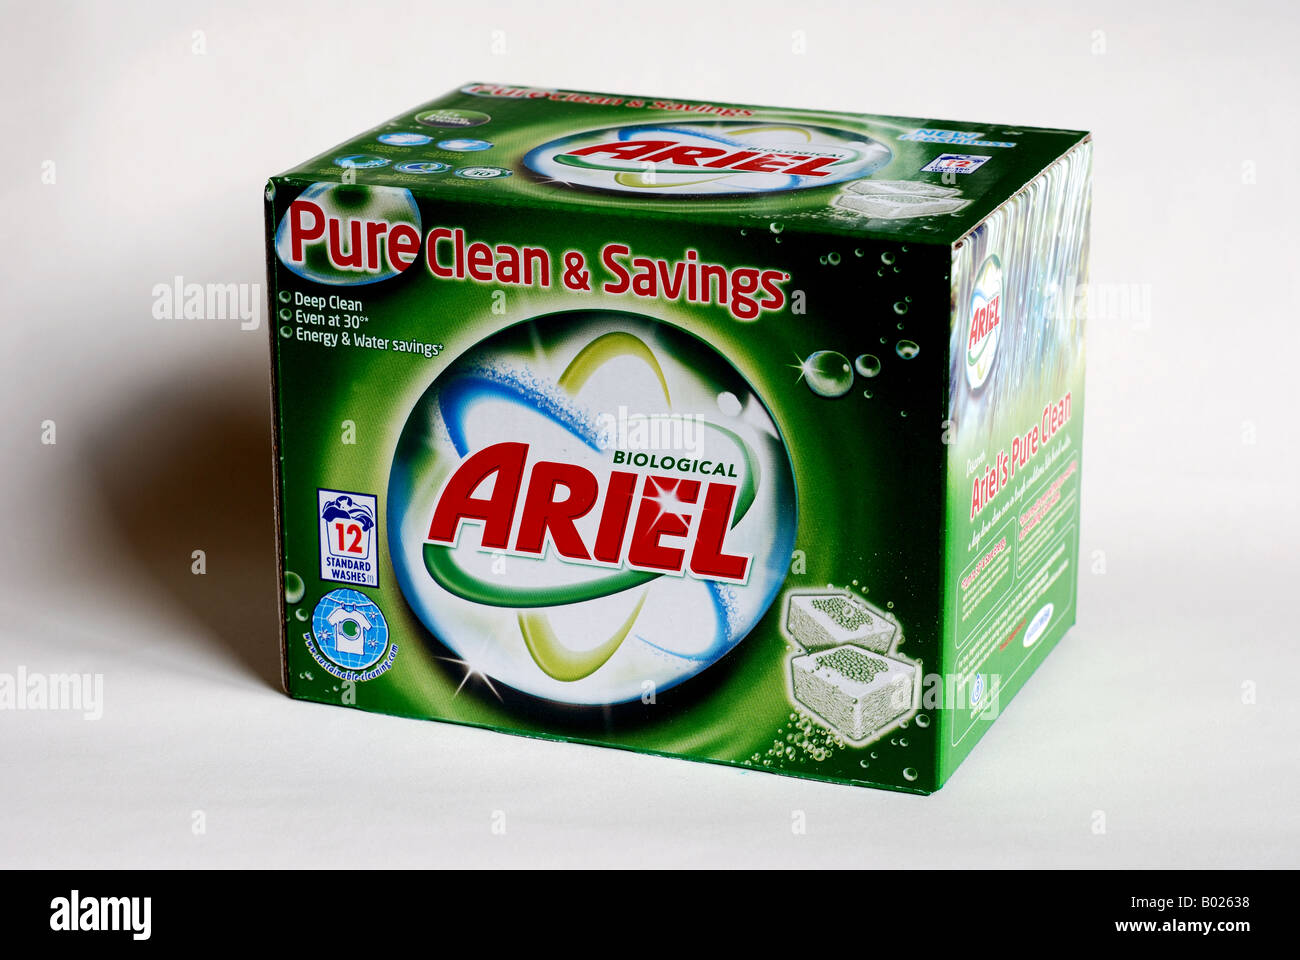 71 Ariel Pods Images, Stock Photos, 3D objects, & Vectors